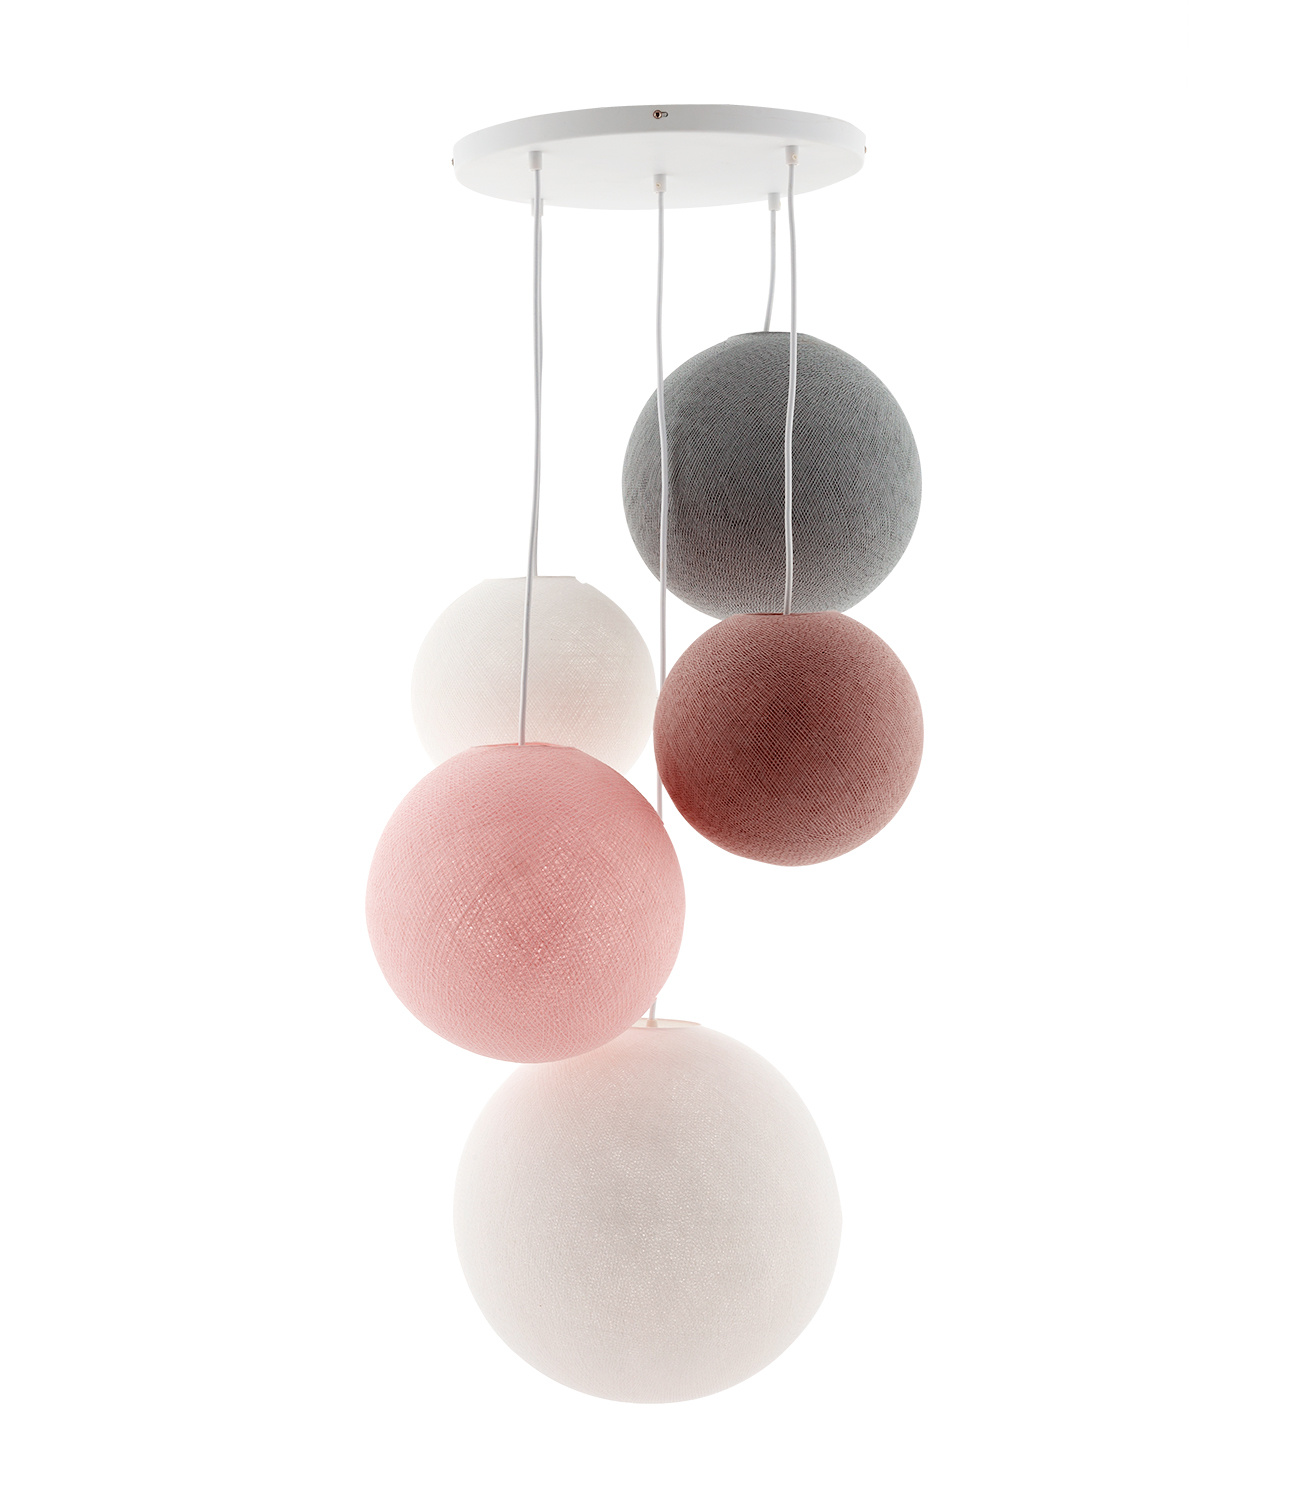 Cotton Ball Lights vijfvoudige hanglamp roze en grijs - Blushy Greys (5-Deluxe)